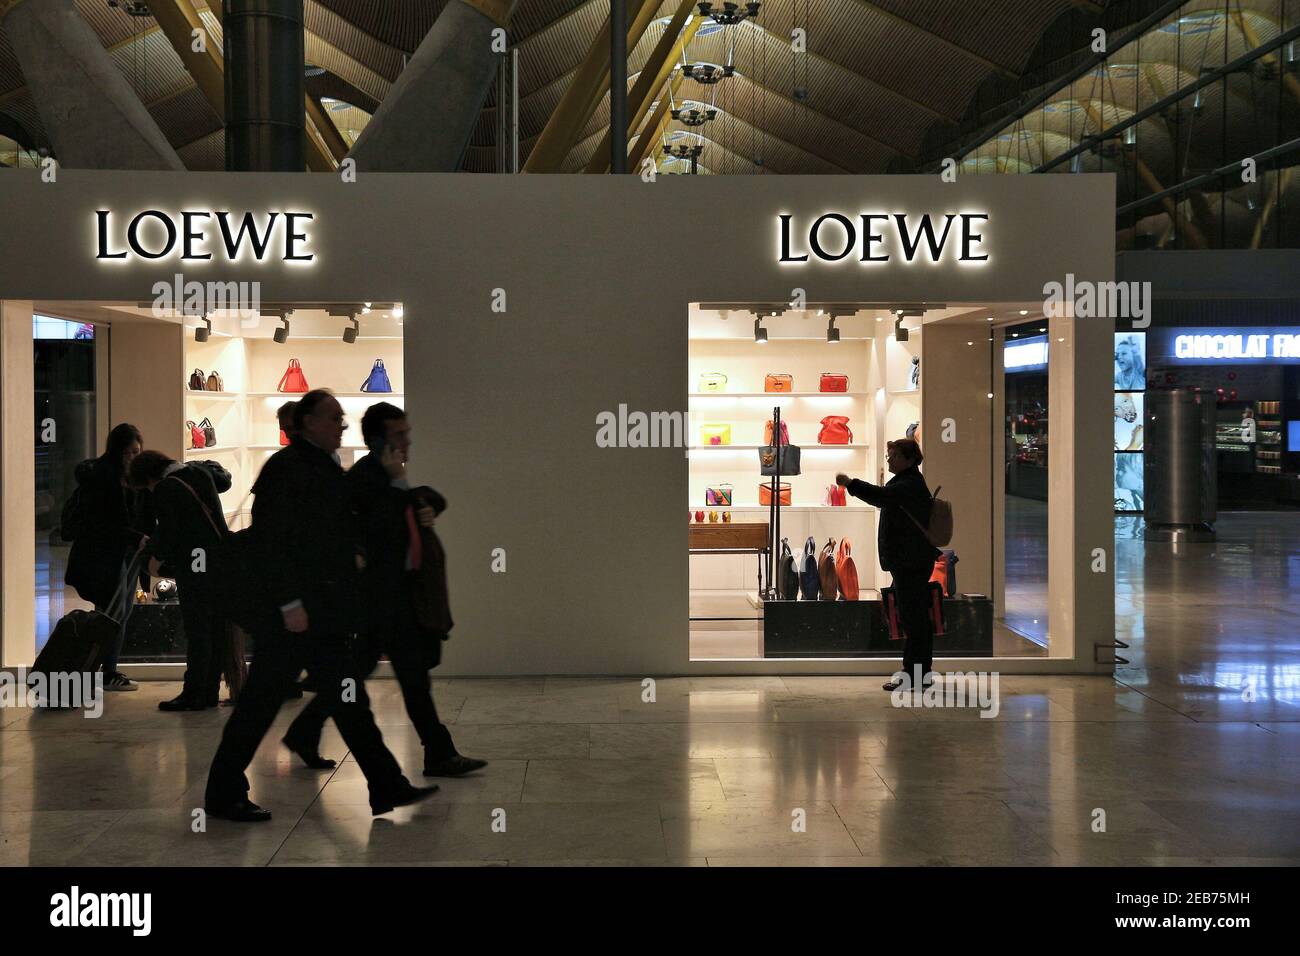 MADRID, SPANIEN - 6. DEZEMBER 2016: Passagiere besuchen Loewe Fashion Shop am Flughafen Madrid in Spanien. Es ist der 6. Verkehrsreichste Flughafen in Europa, mit 50.4 m Stockfoto